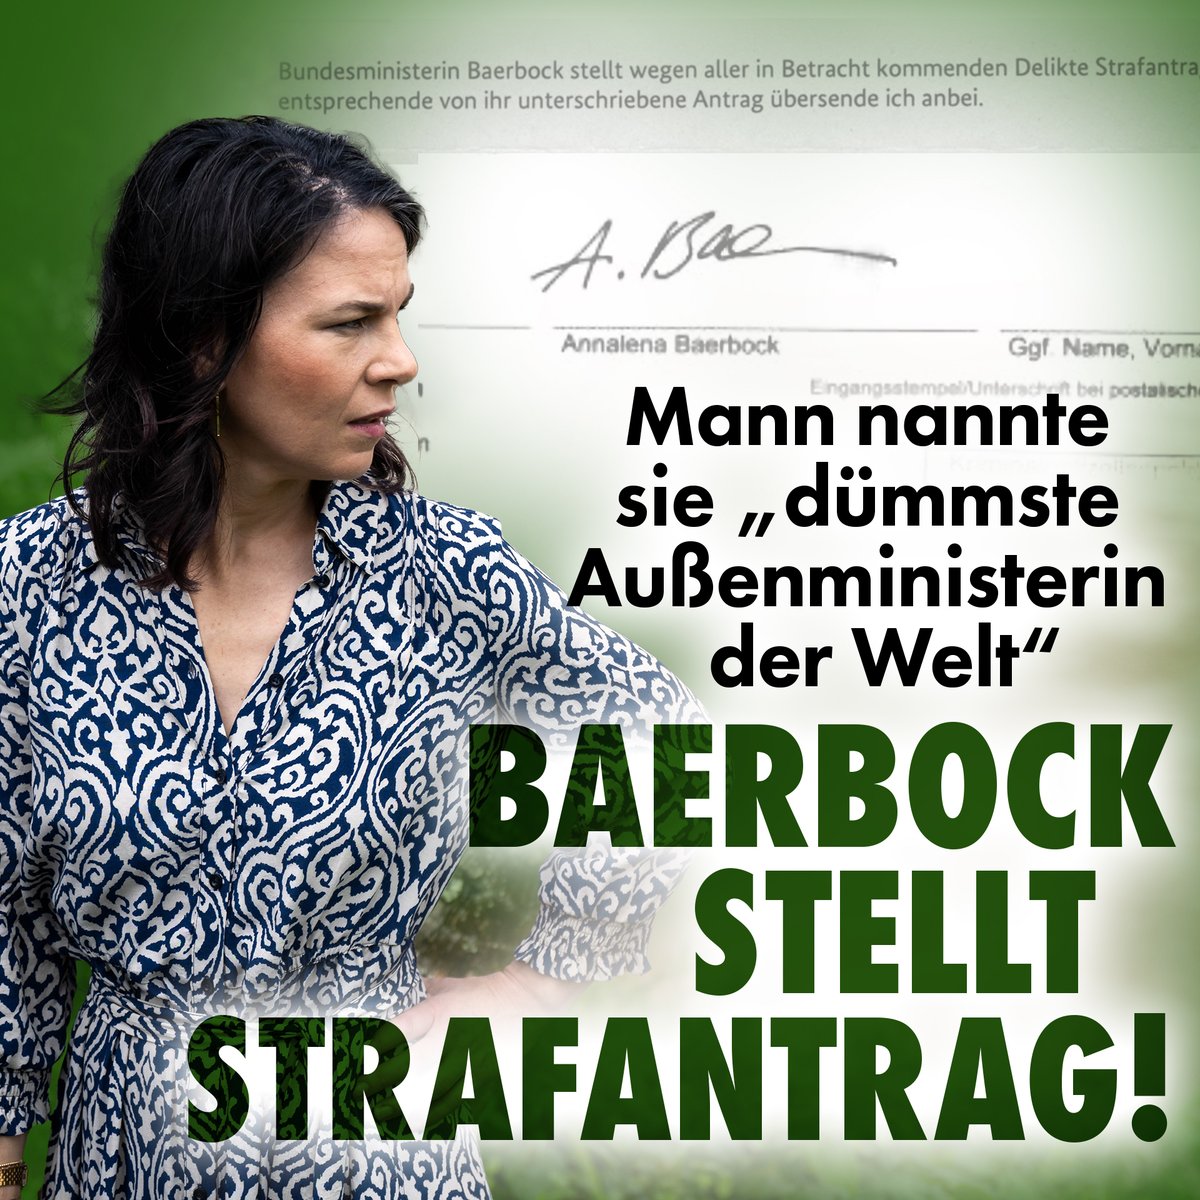 Es war ein kleiner, gemeiner Post von vielen auf X. Für Annalena #Baerbock Grund genug, den Verfasser vor Gericht zu ziehen. nius.de/gesellschaft/m…